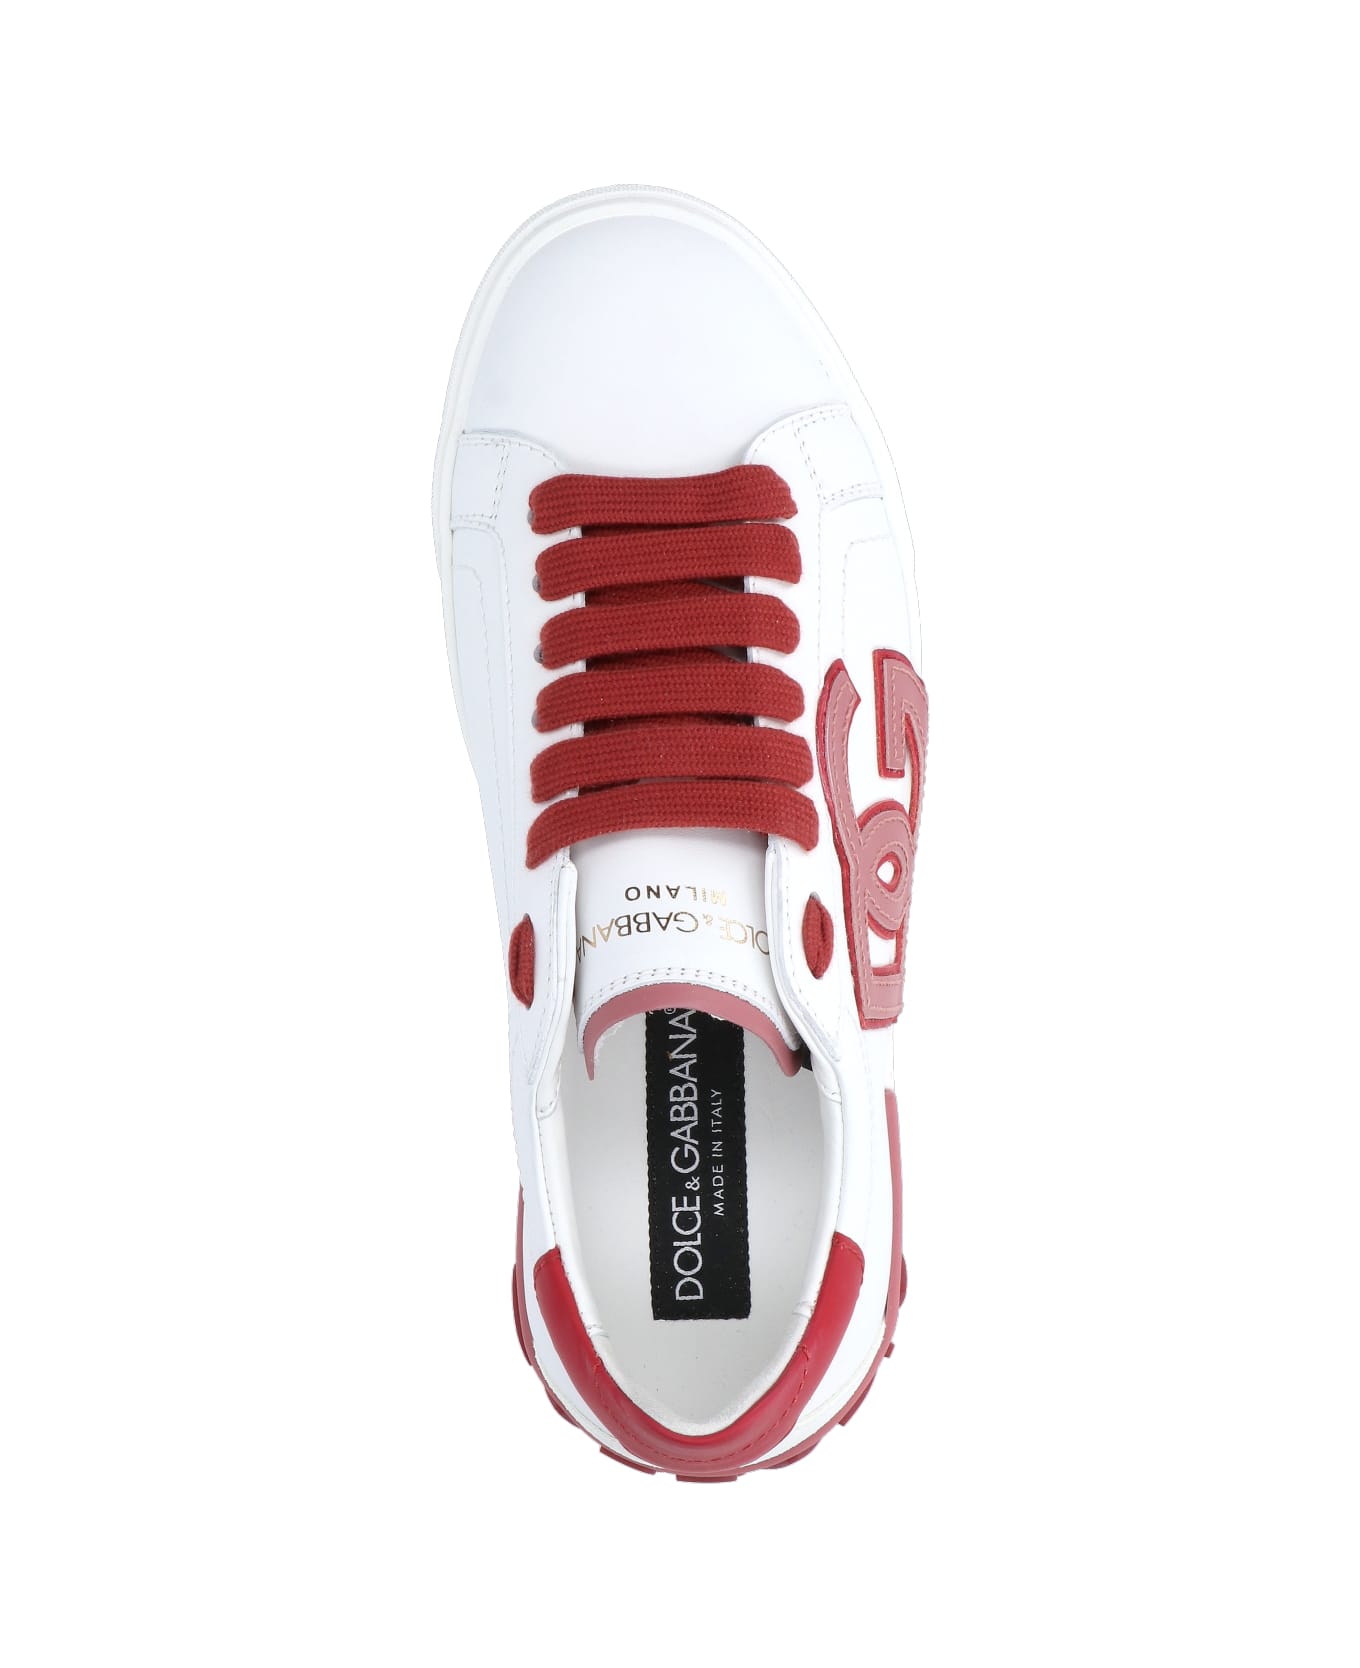 Dolce & Gabbana Portofino Vintage Sneakers - White スニーカー